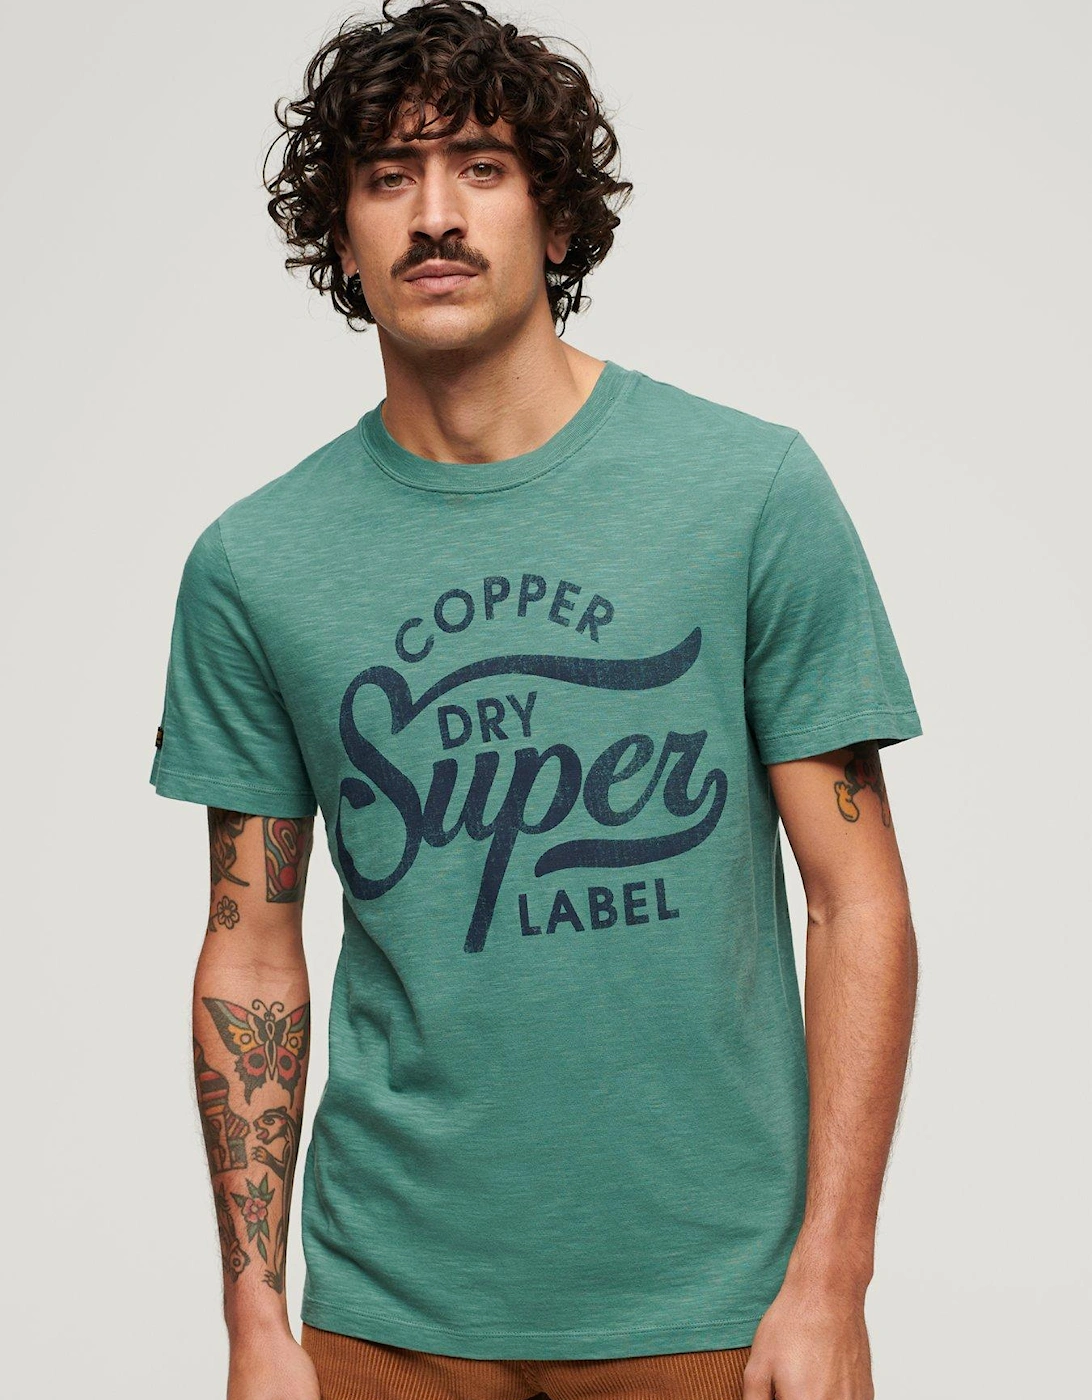 Copper Label Script T-shirt - Green, 6 of 5